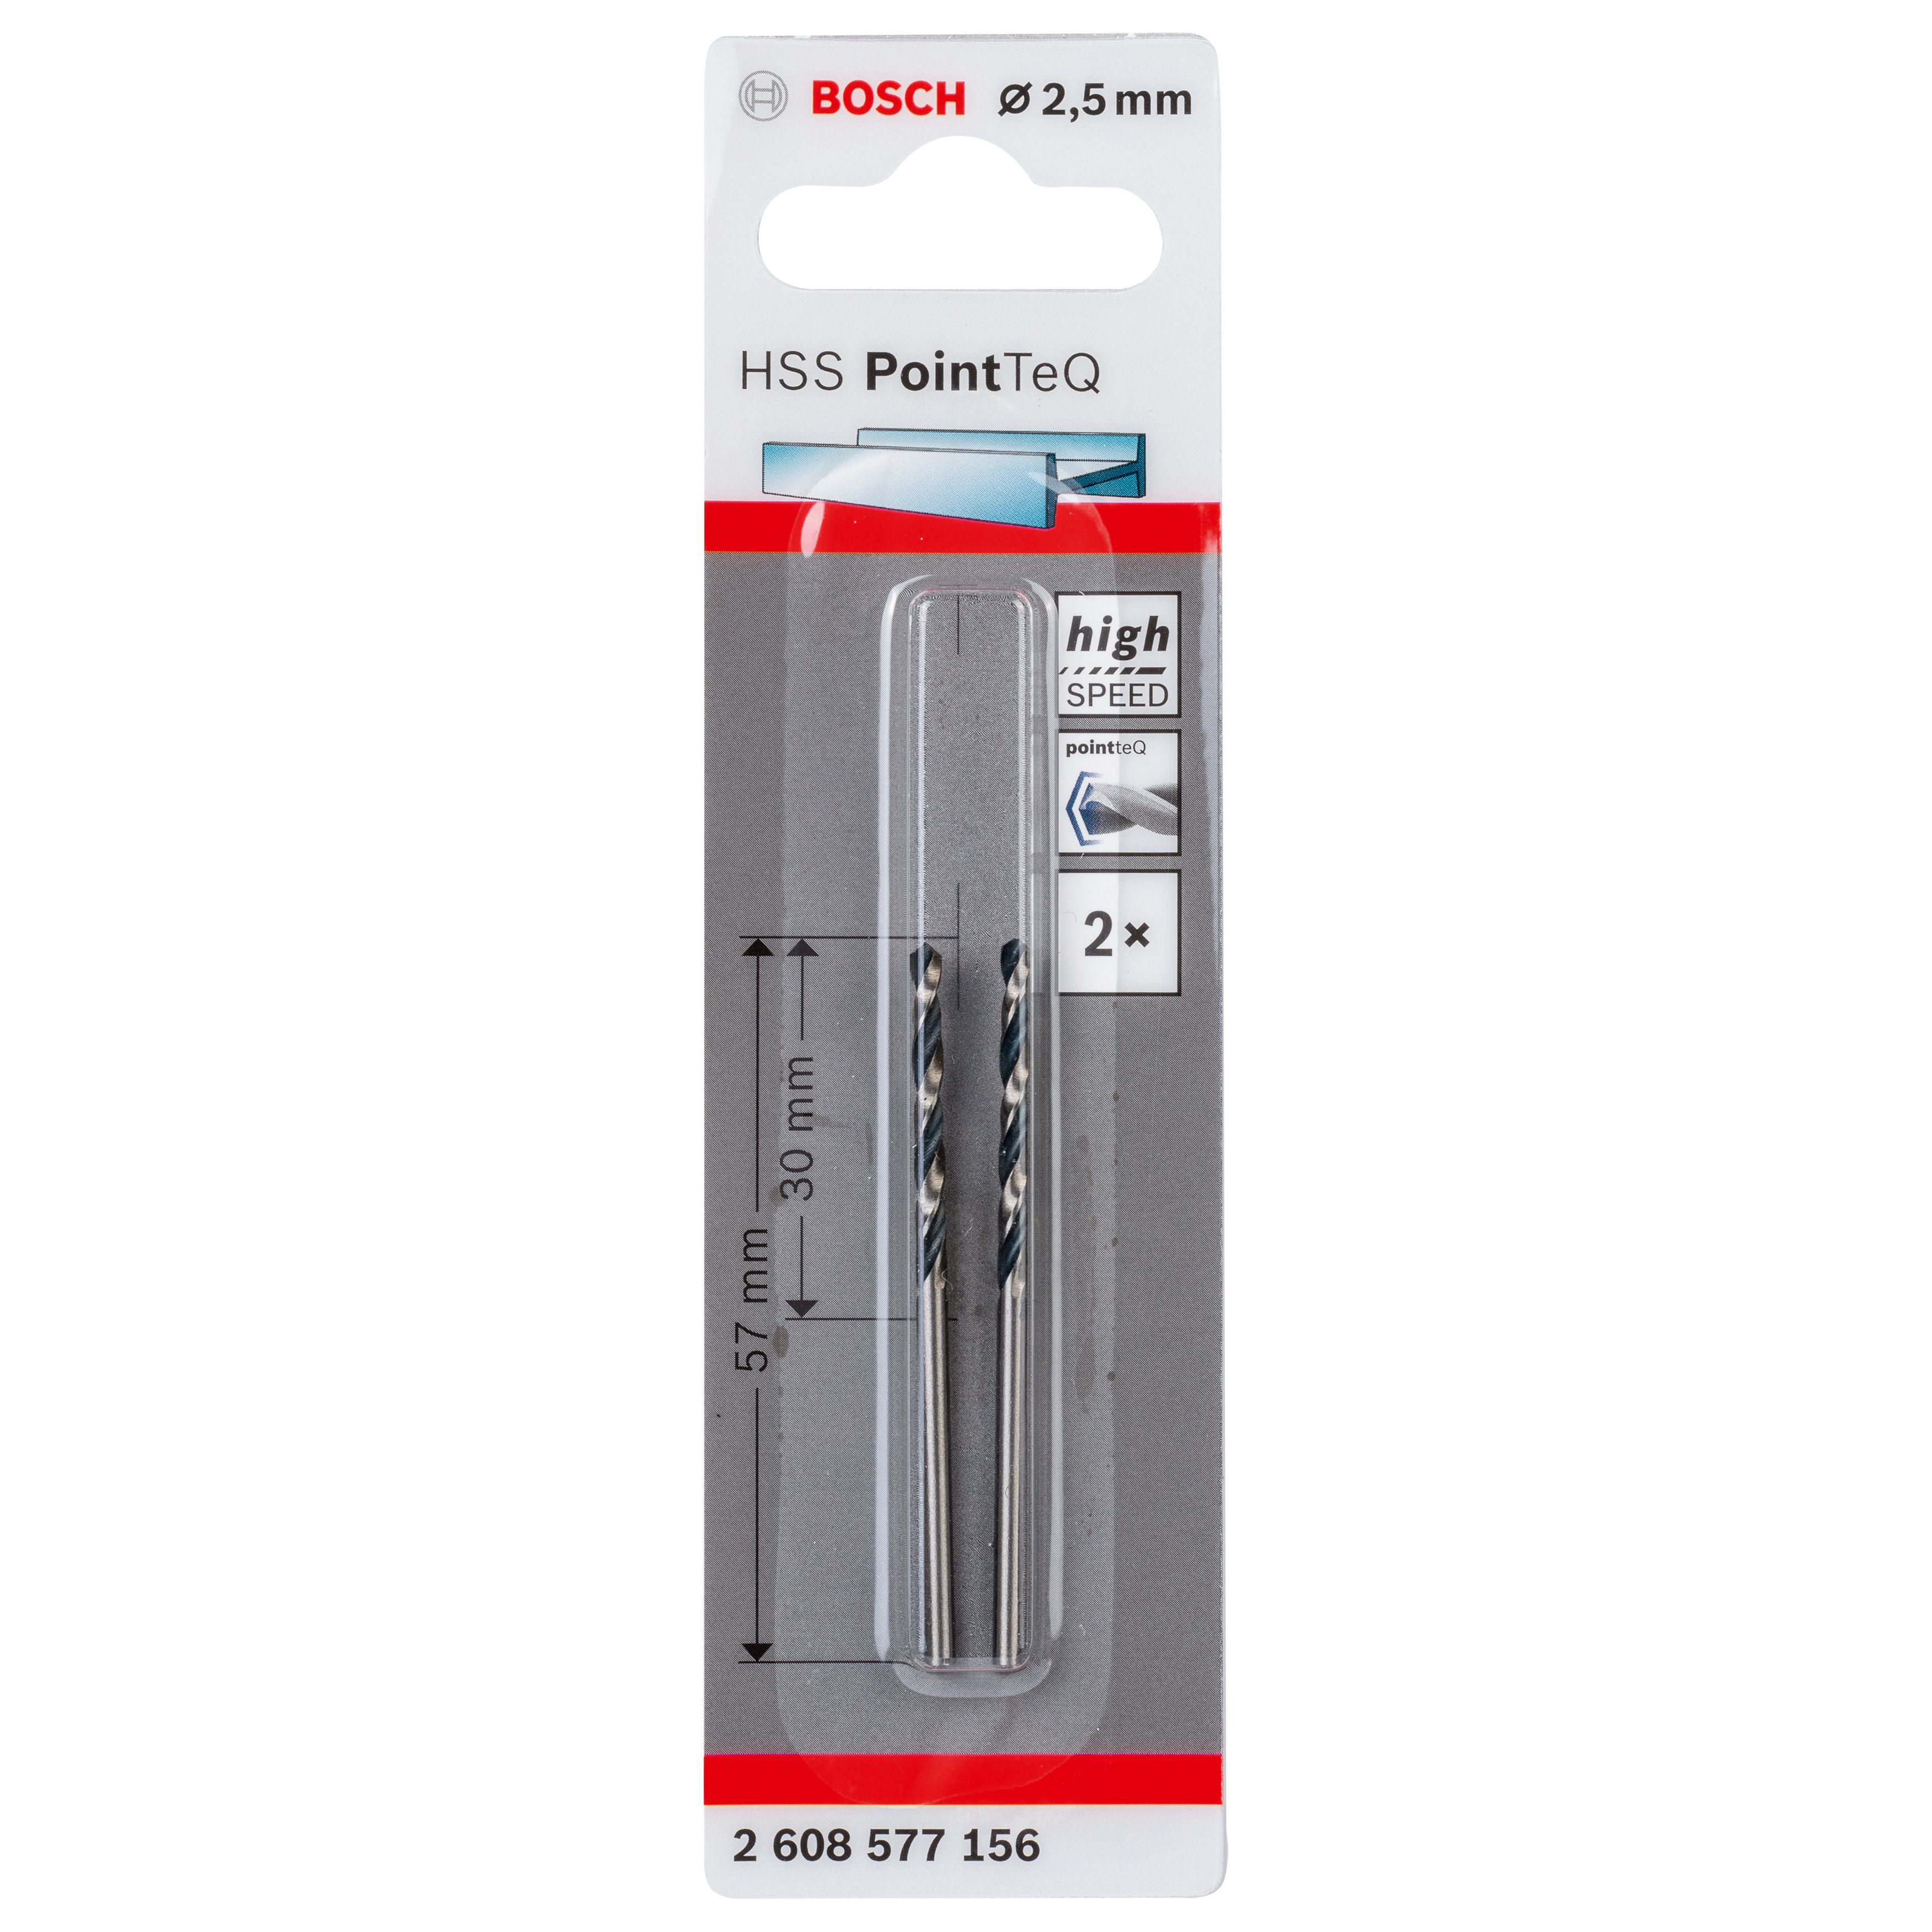 Bosch Professional Straight Metal Drill bit (Dia)2.5mm (L)30mm, Pack of 2